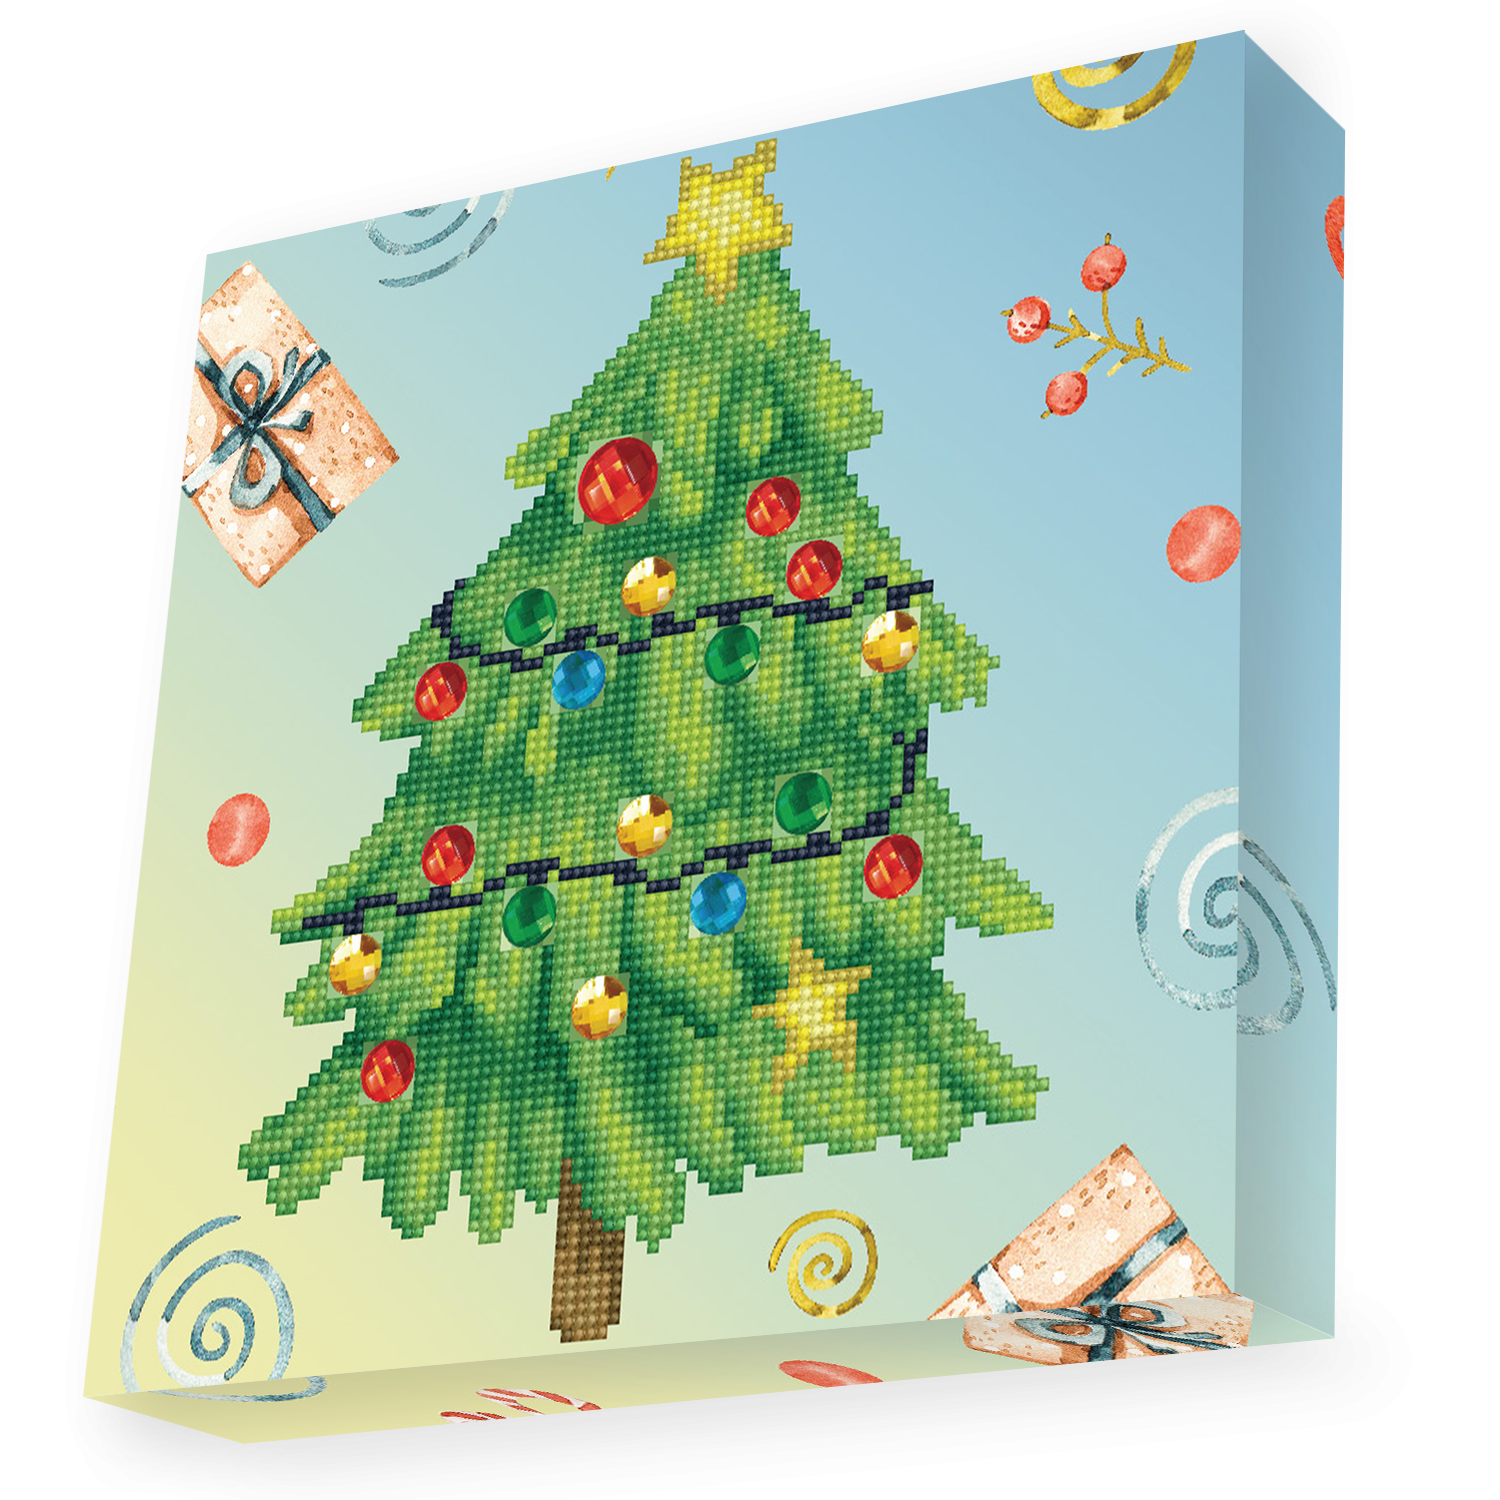 Christmas Tree, Diamond Dotz Stockings